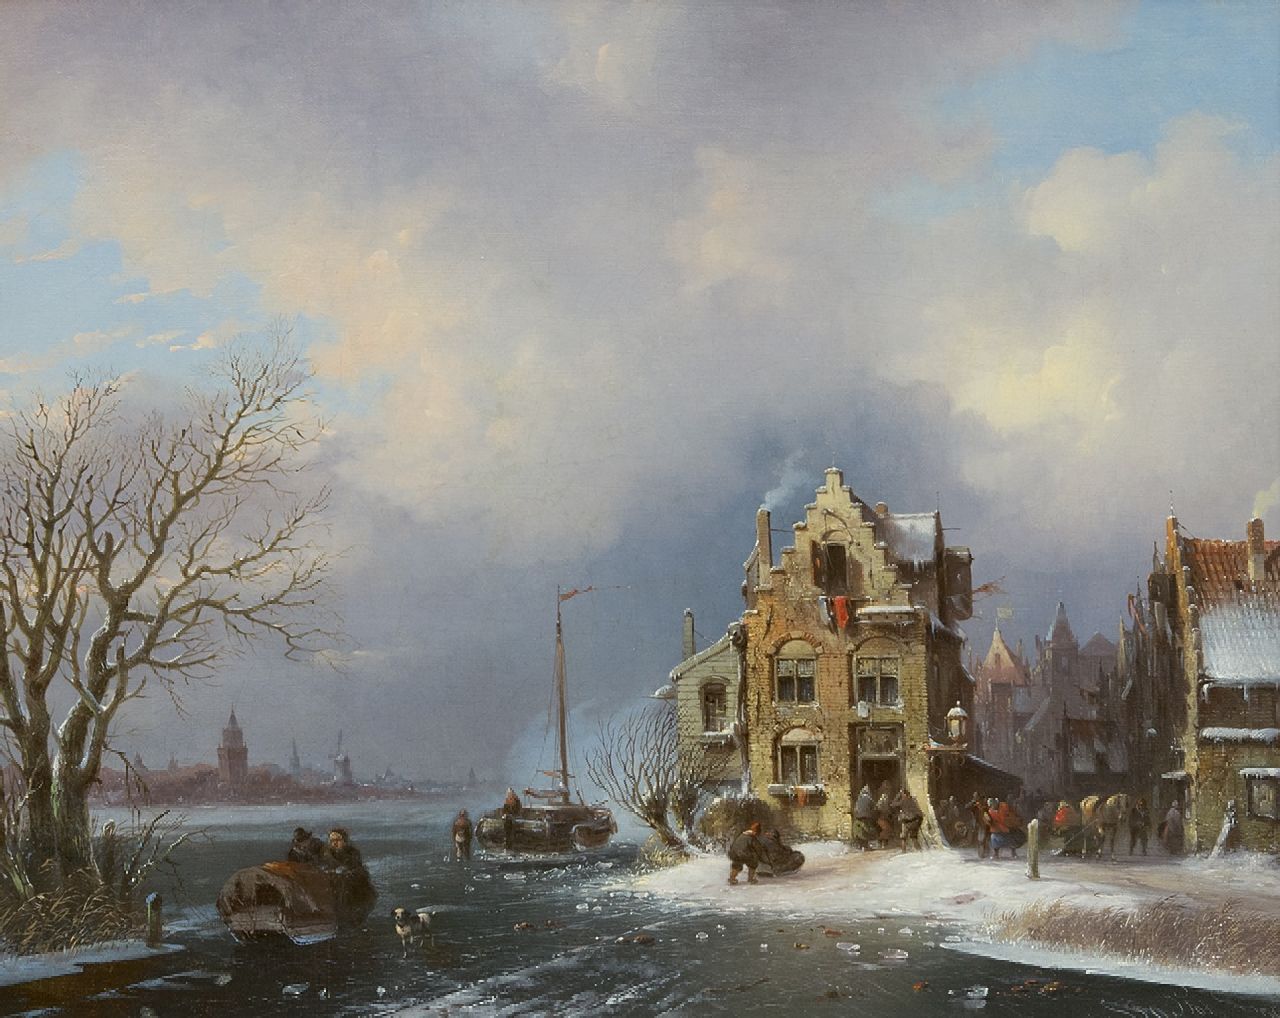 Stok J. van der | Jacobus van der Stok | Gemälde zum Verkauf angeboten | Lebhafter Tag in einer Stadt an einem zugefrorenen Fluss, Öl auf Leinwand 40,8 x 50,6 cm, Unterzeichnet u.r. und datiert '59